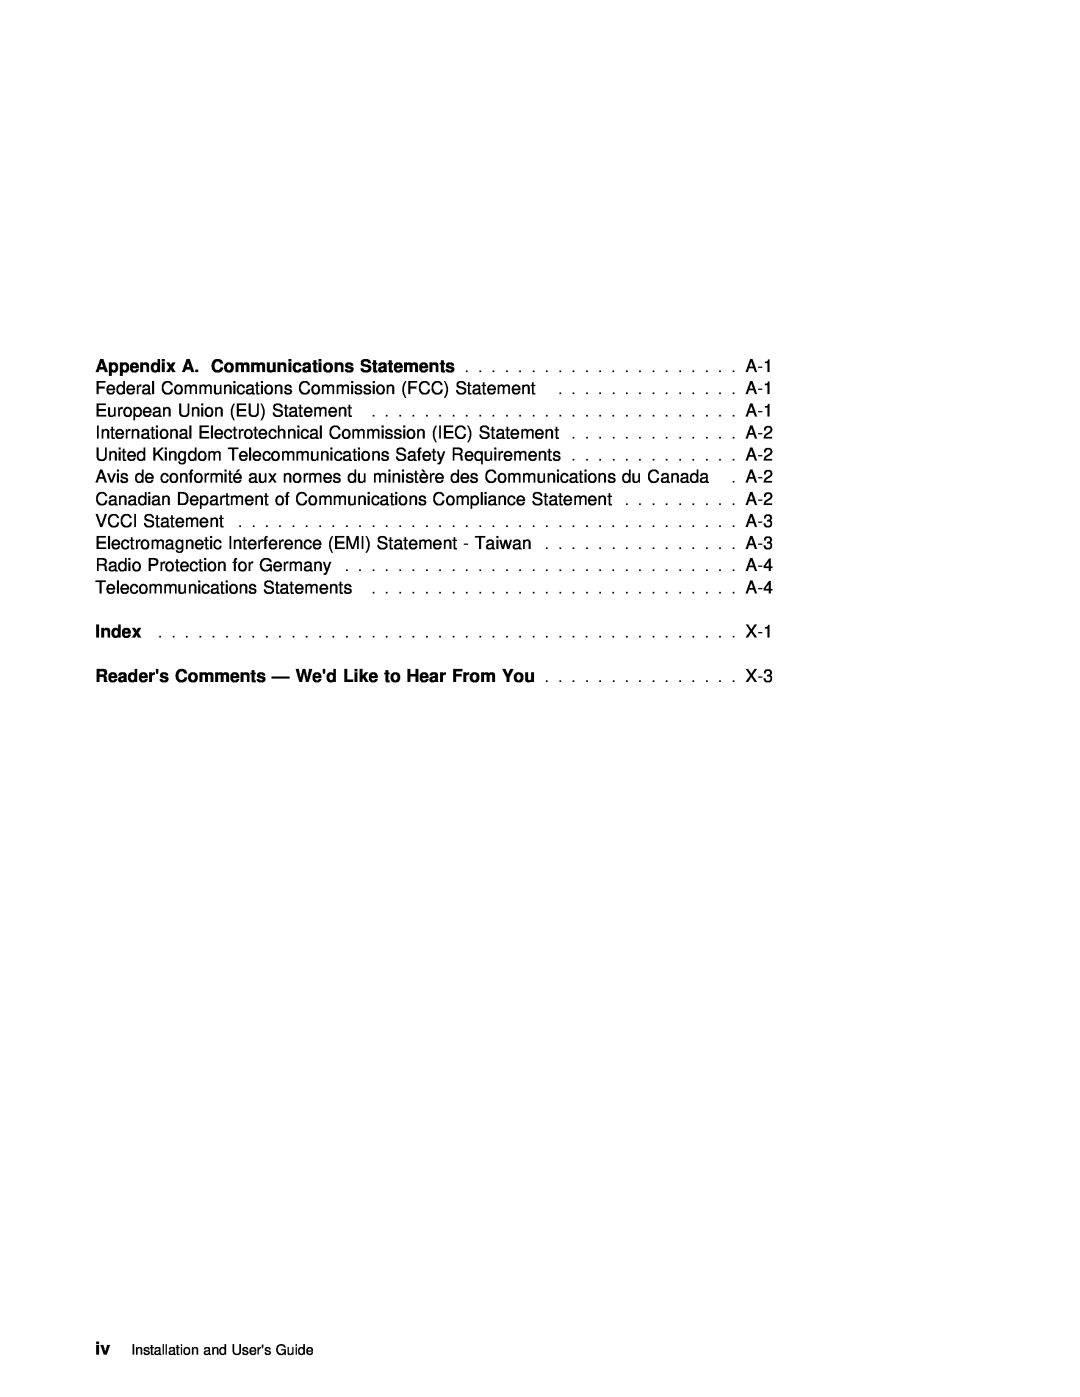 IBM ARTIC960RxD manual Index 